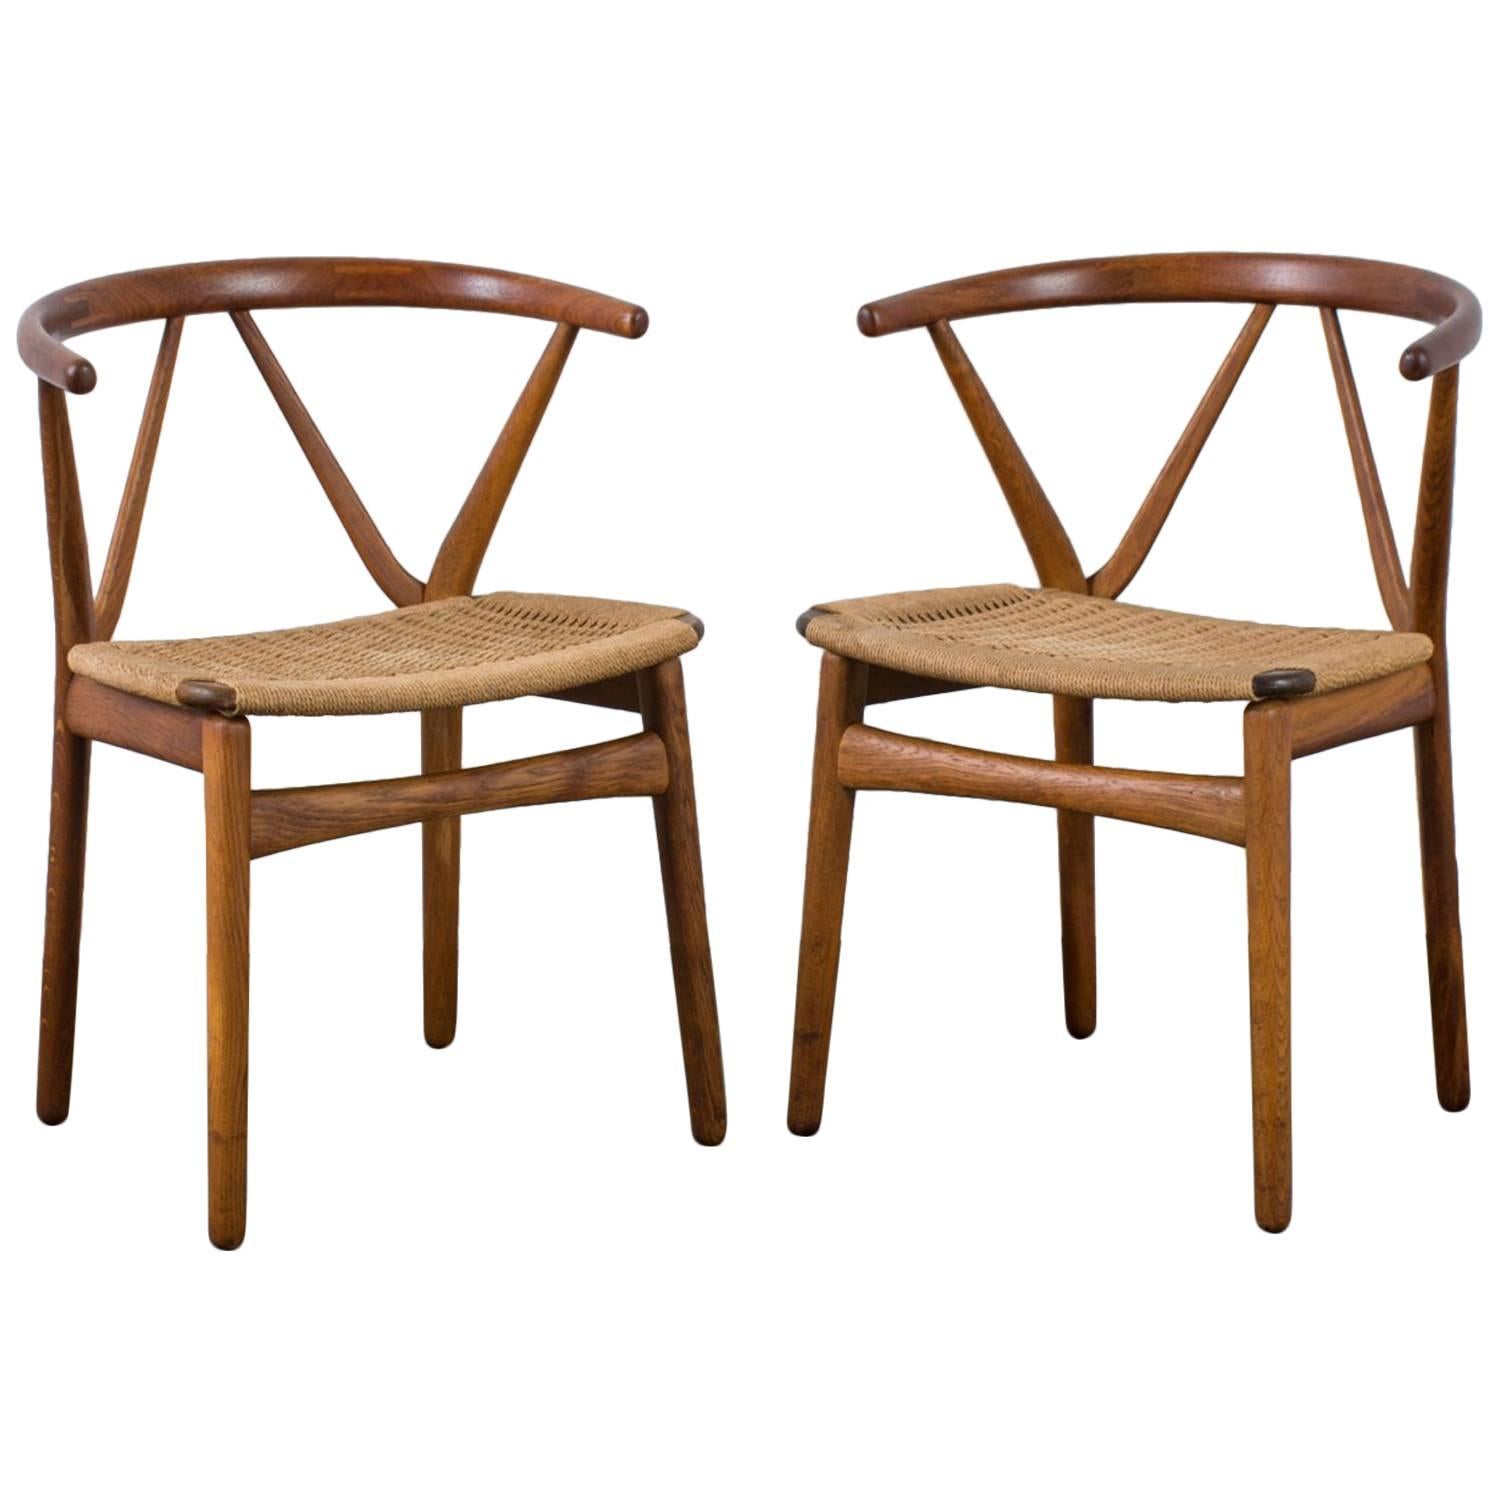 Henning Kjærnulf for Bruno Hansen Model 255 Teak Chairs, 1960s For Sale